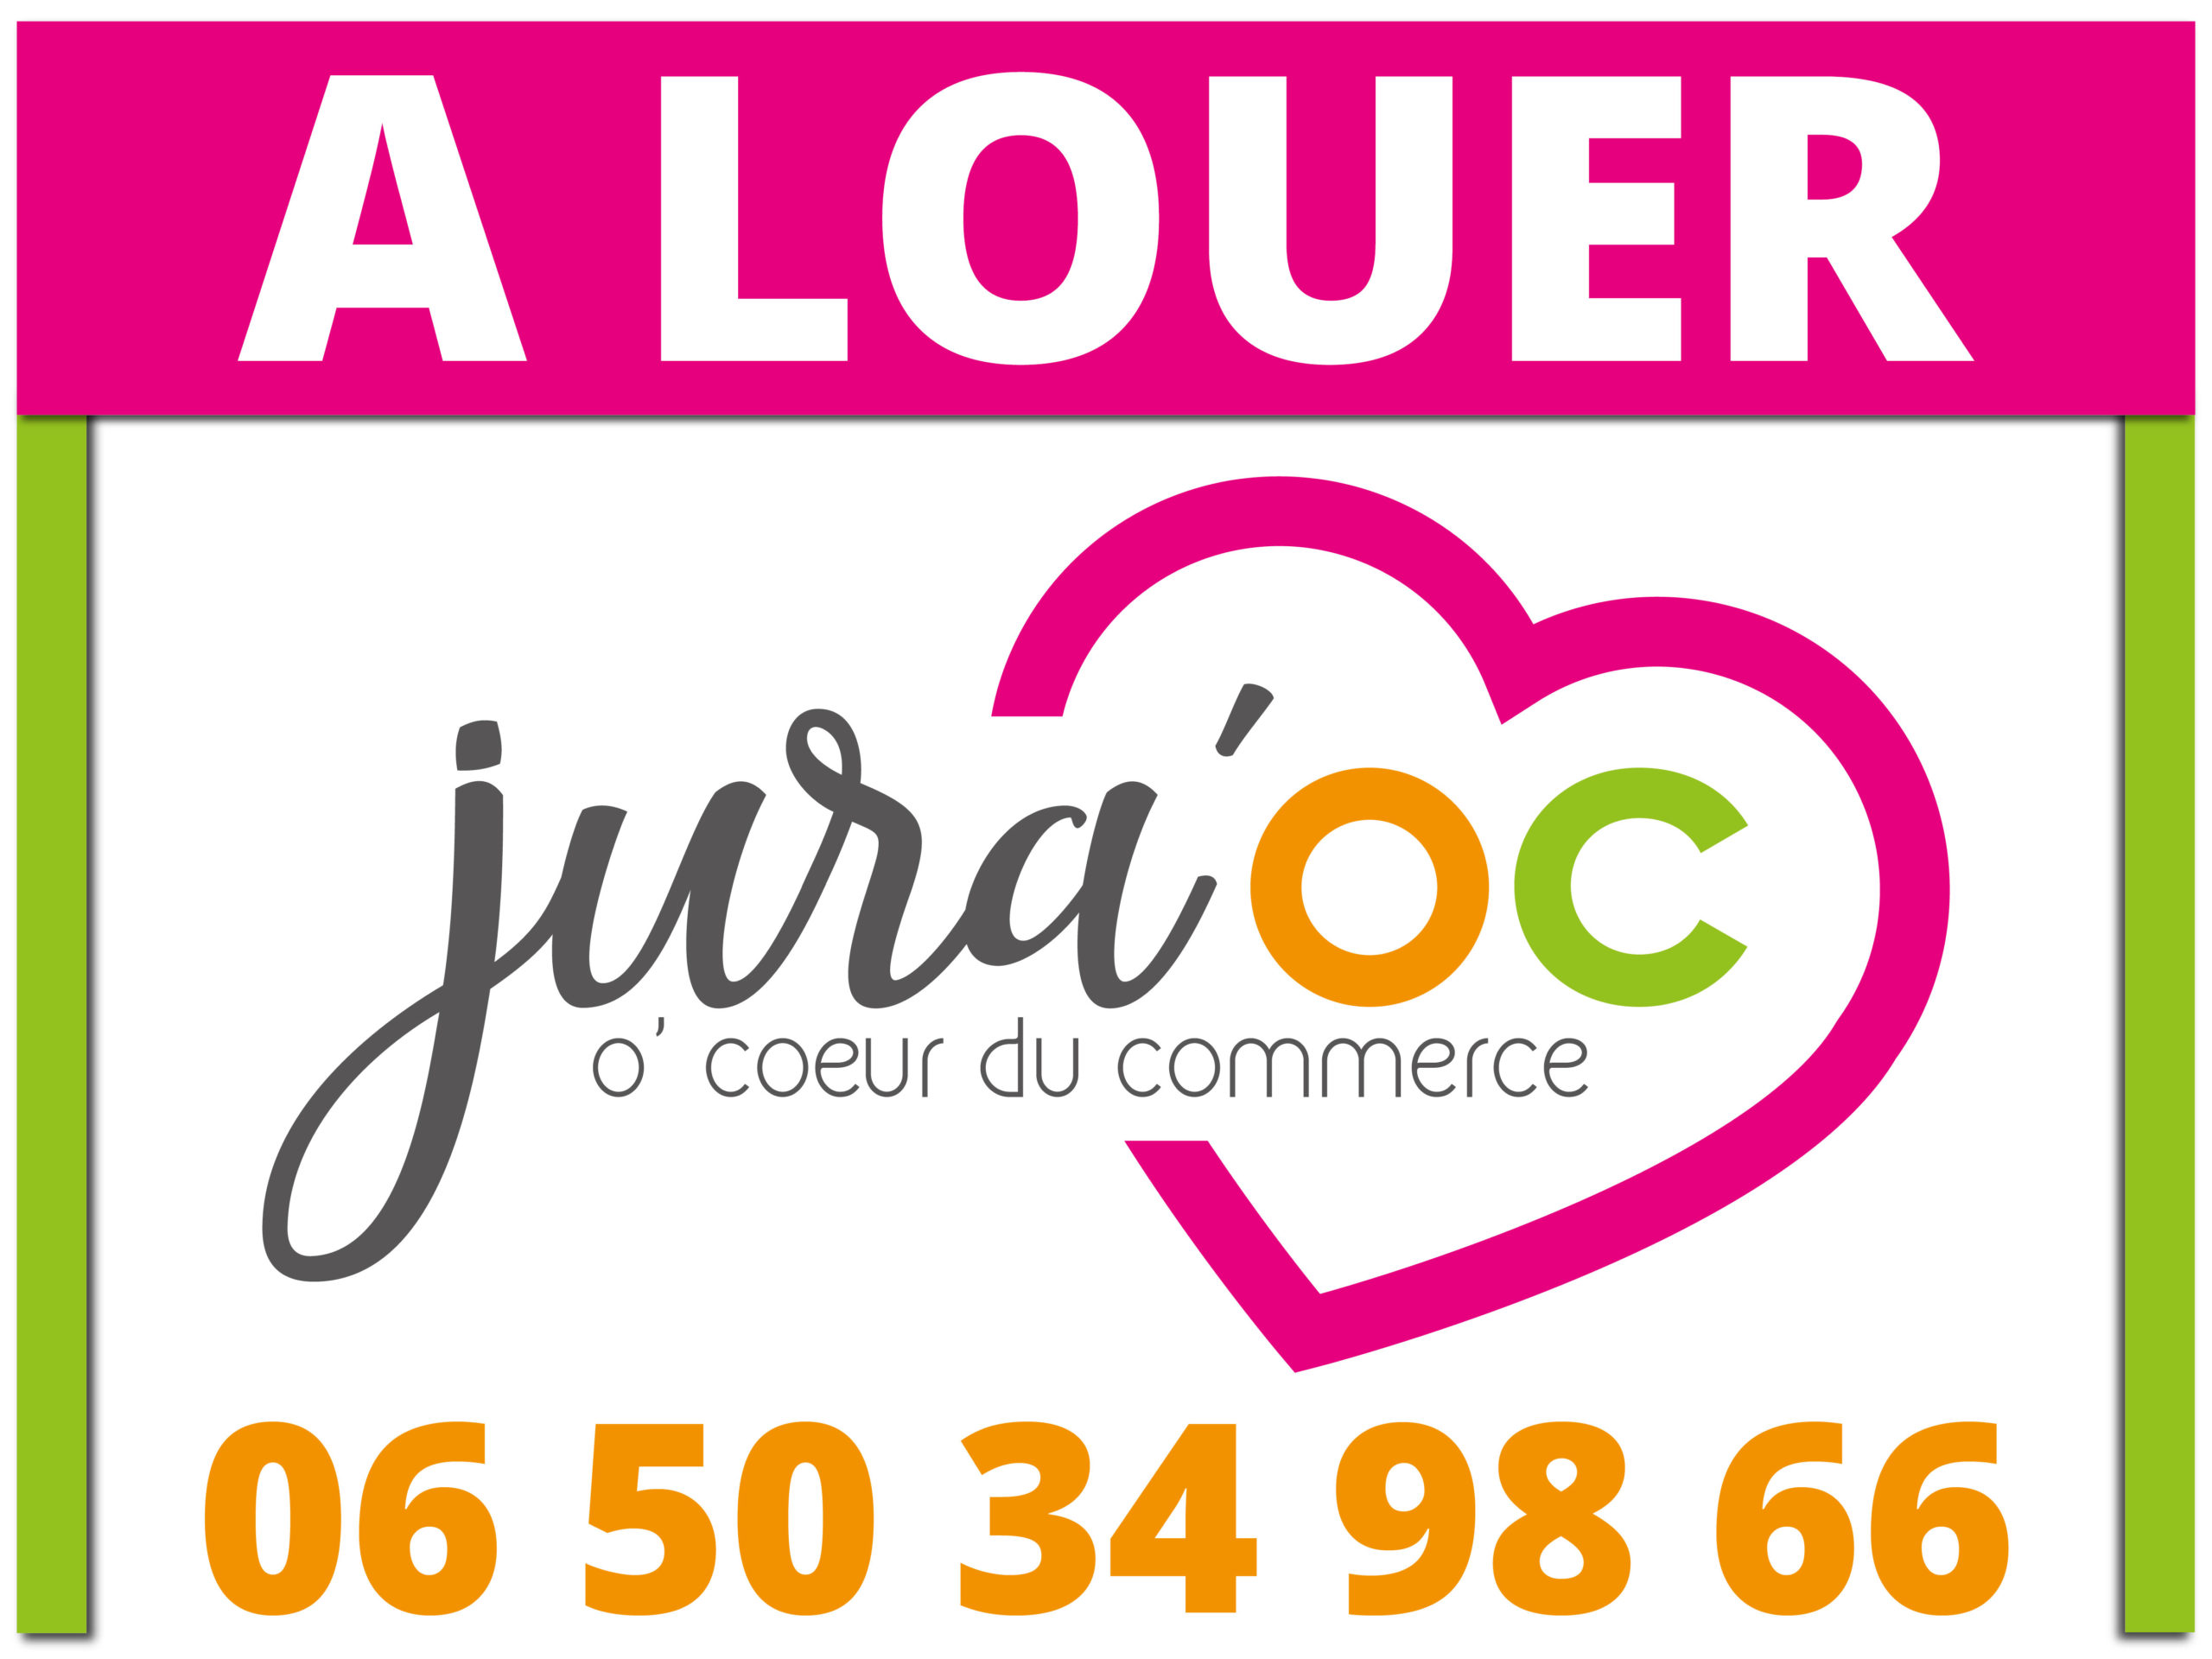 Logo Jura OC